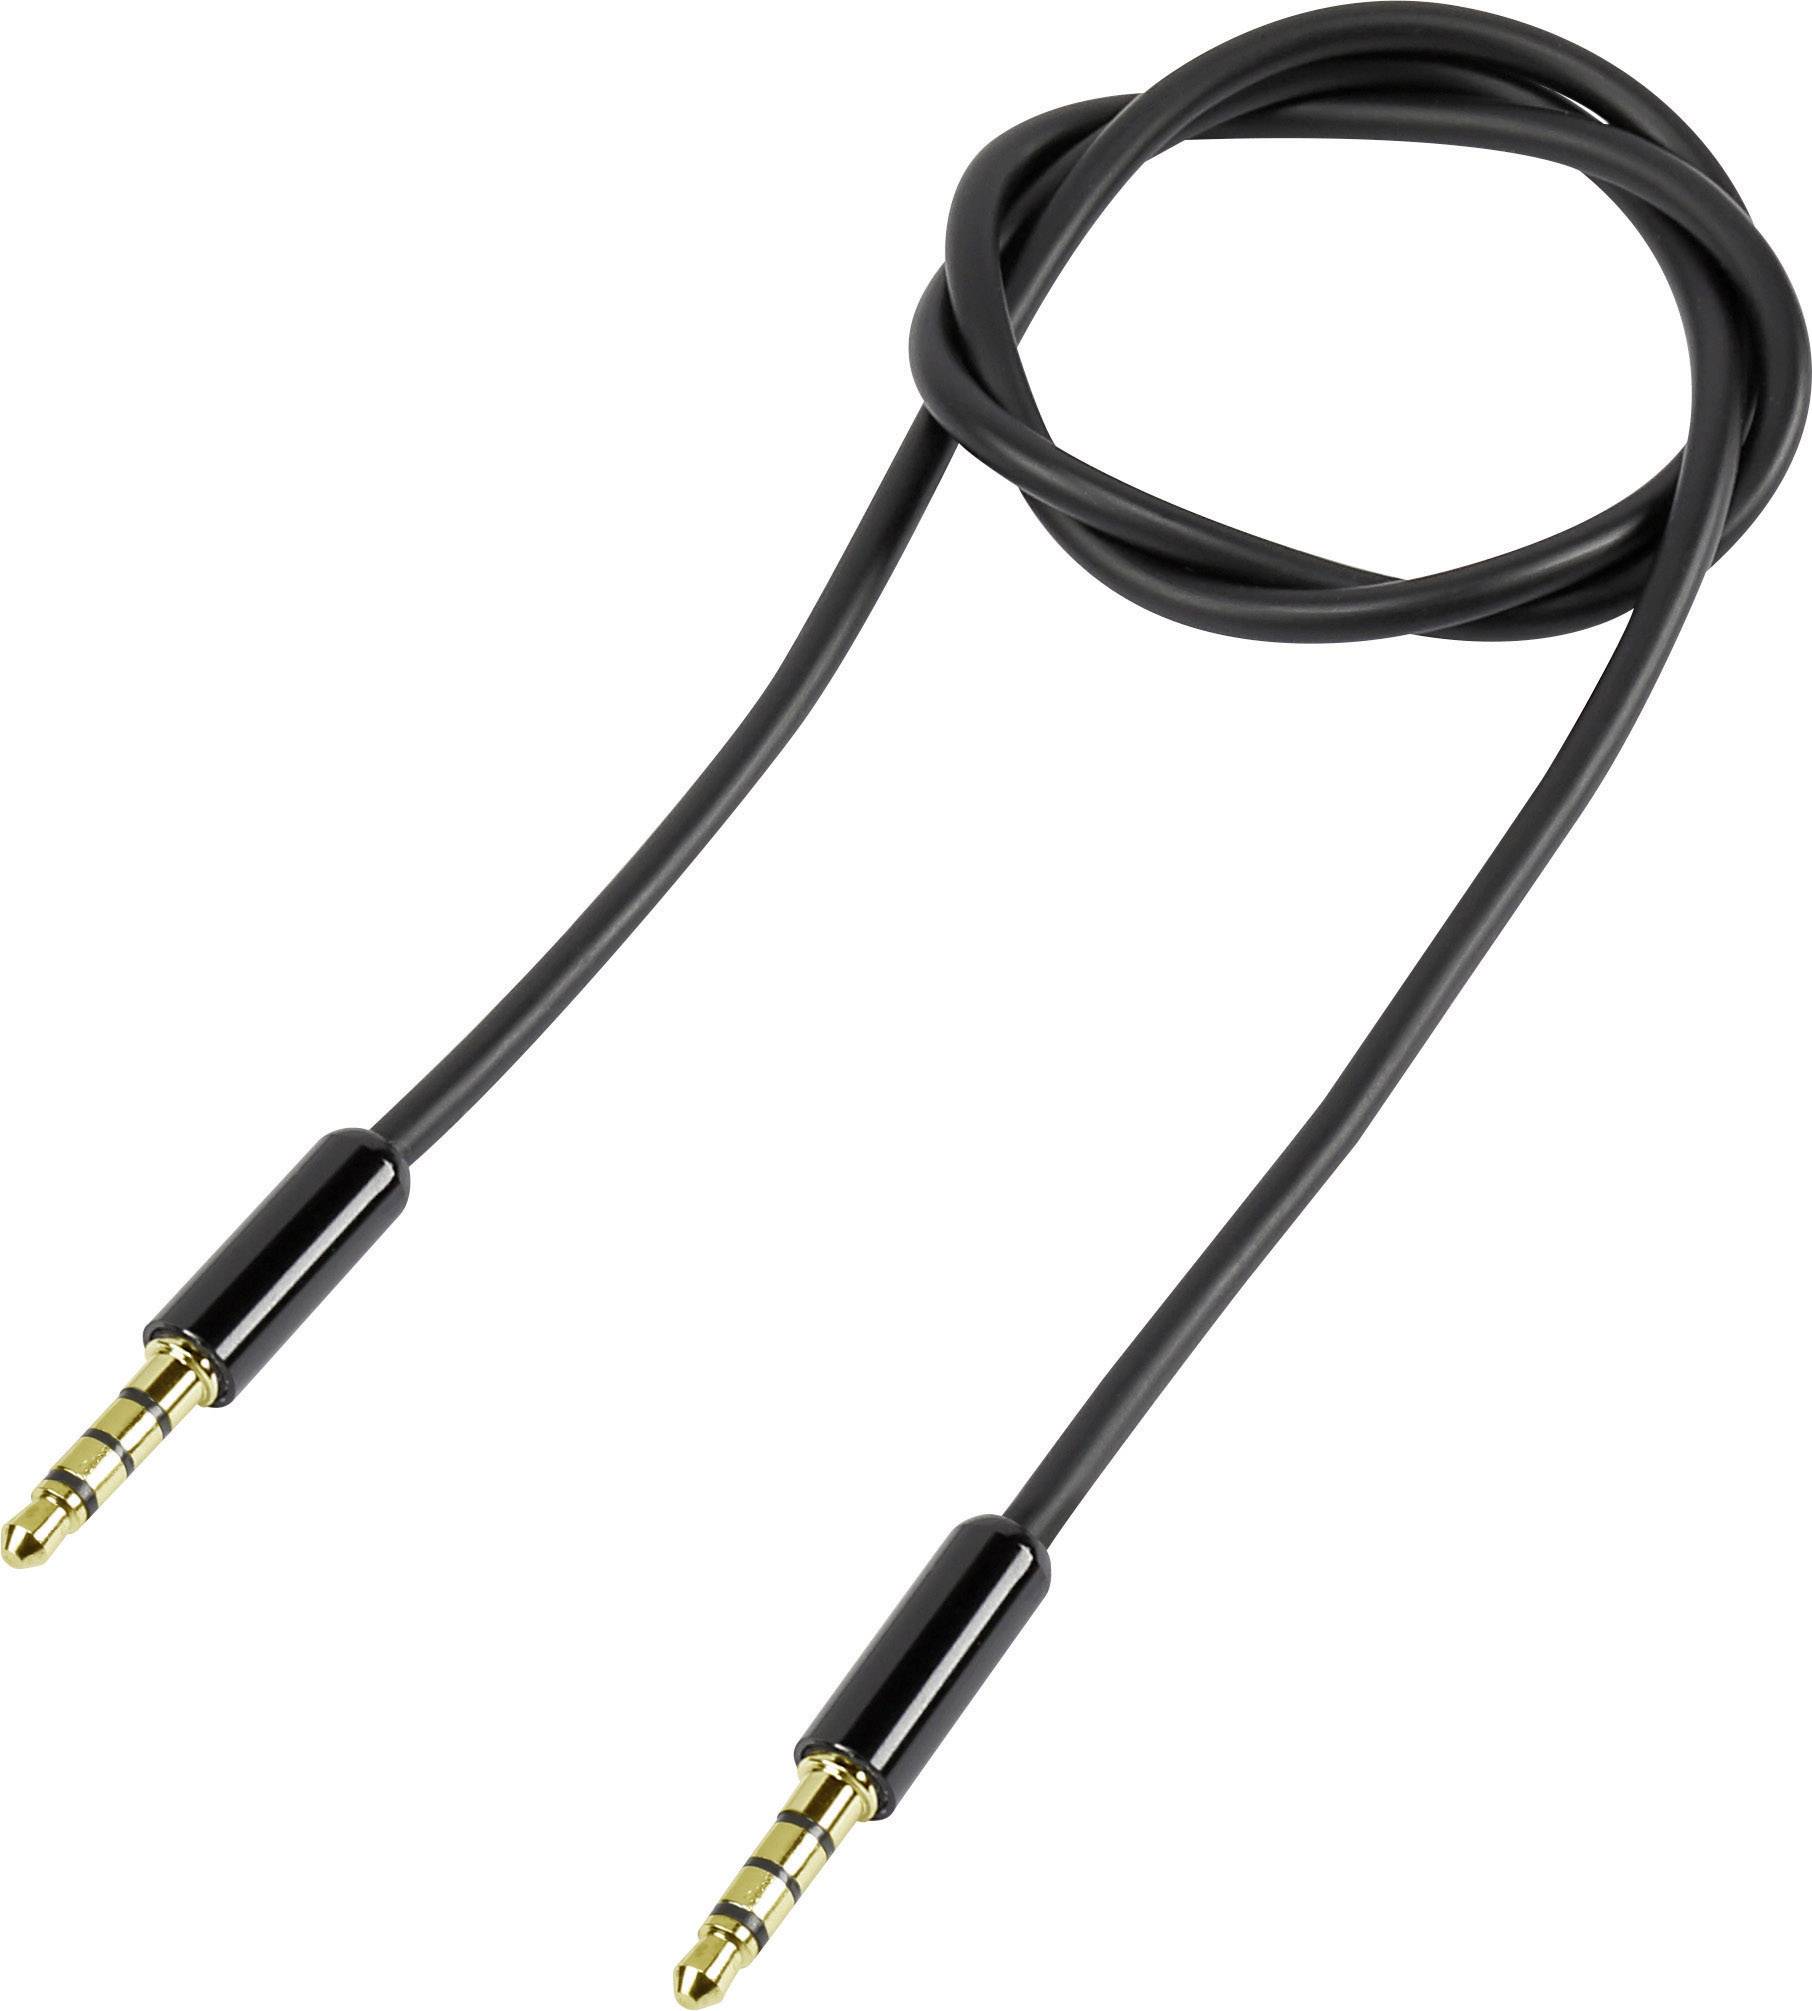 CONRAD Klinke 4pol. Audio Anschlusskabel [1x Klinkenstecker 3.5 mm - 1x Klinkenstecker 3.5 mm] 1 m S